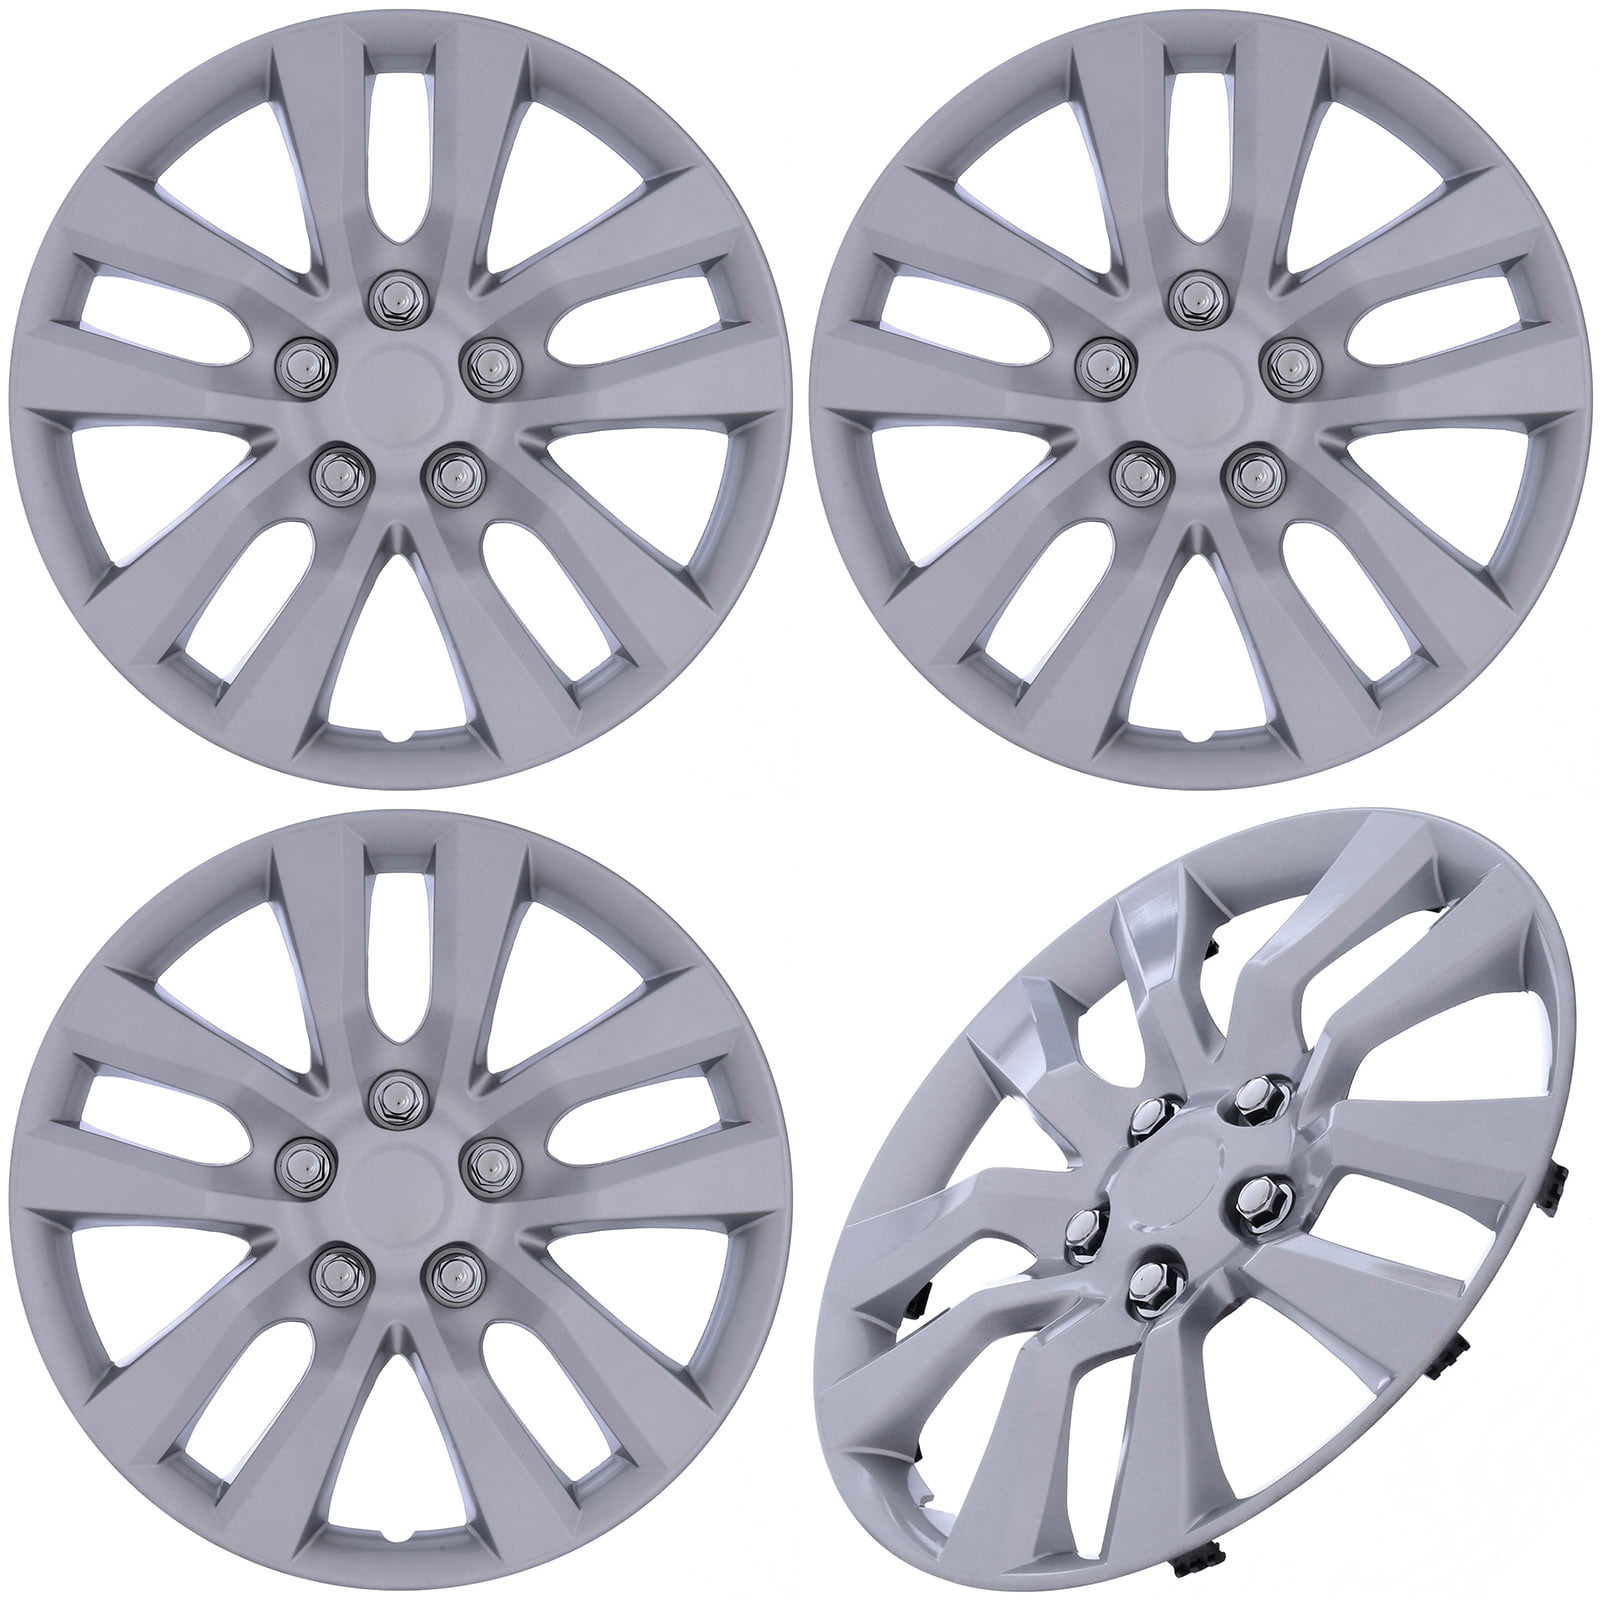 16 Silver Replica Wheel Cover, Nissan Altima Set of 4 Drive Accessories KT-942-16S/L 